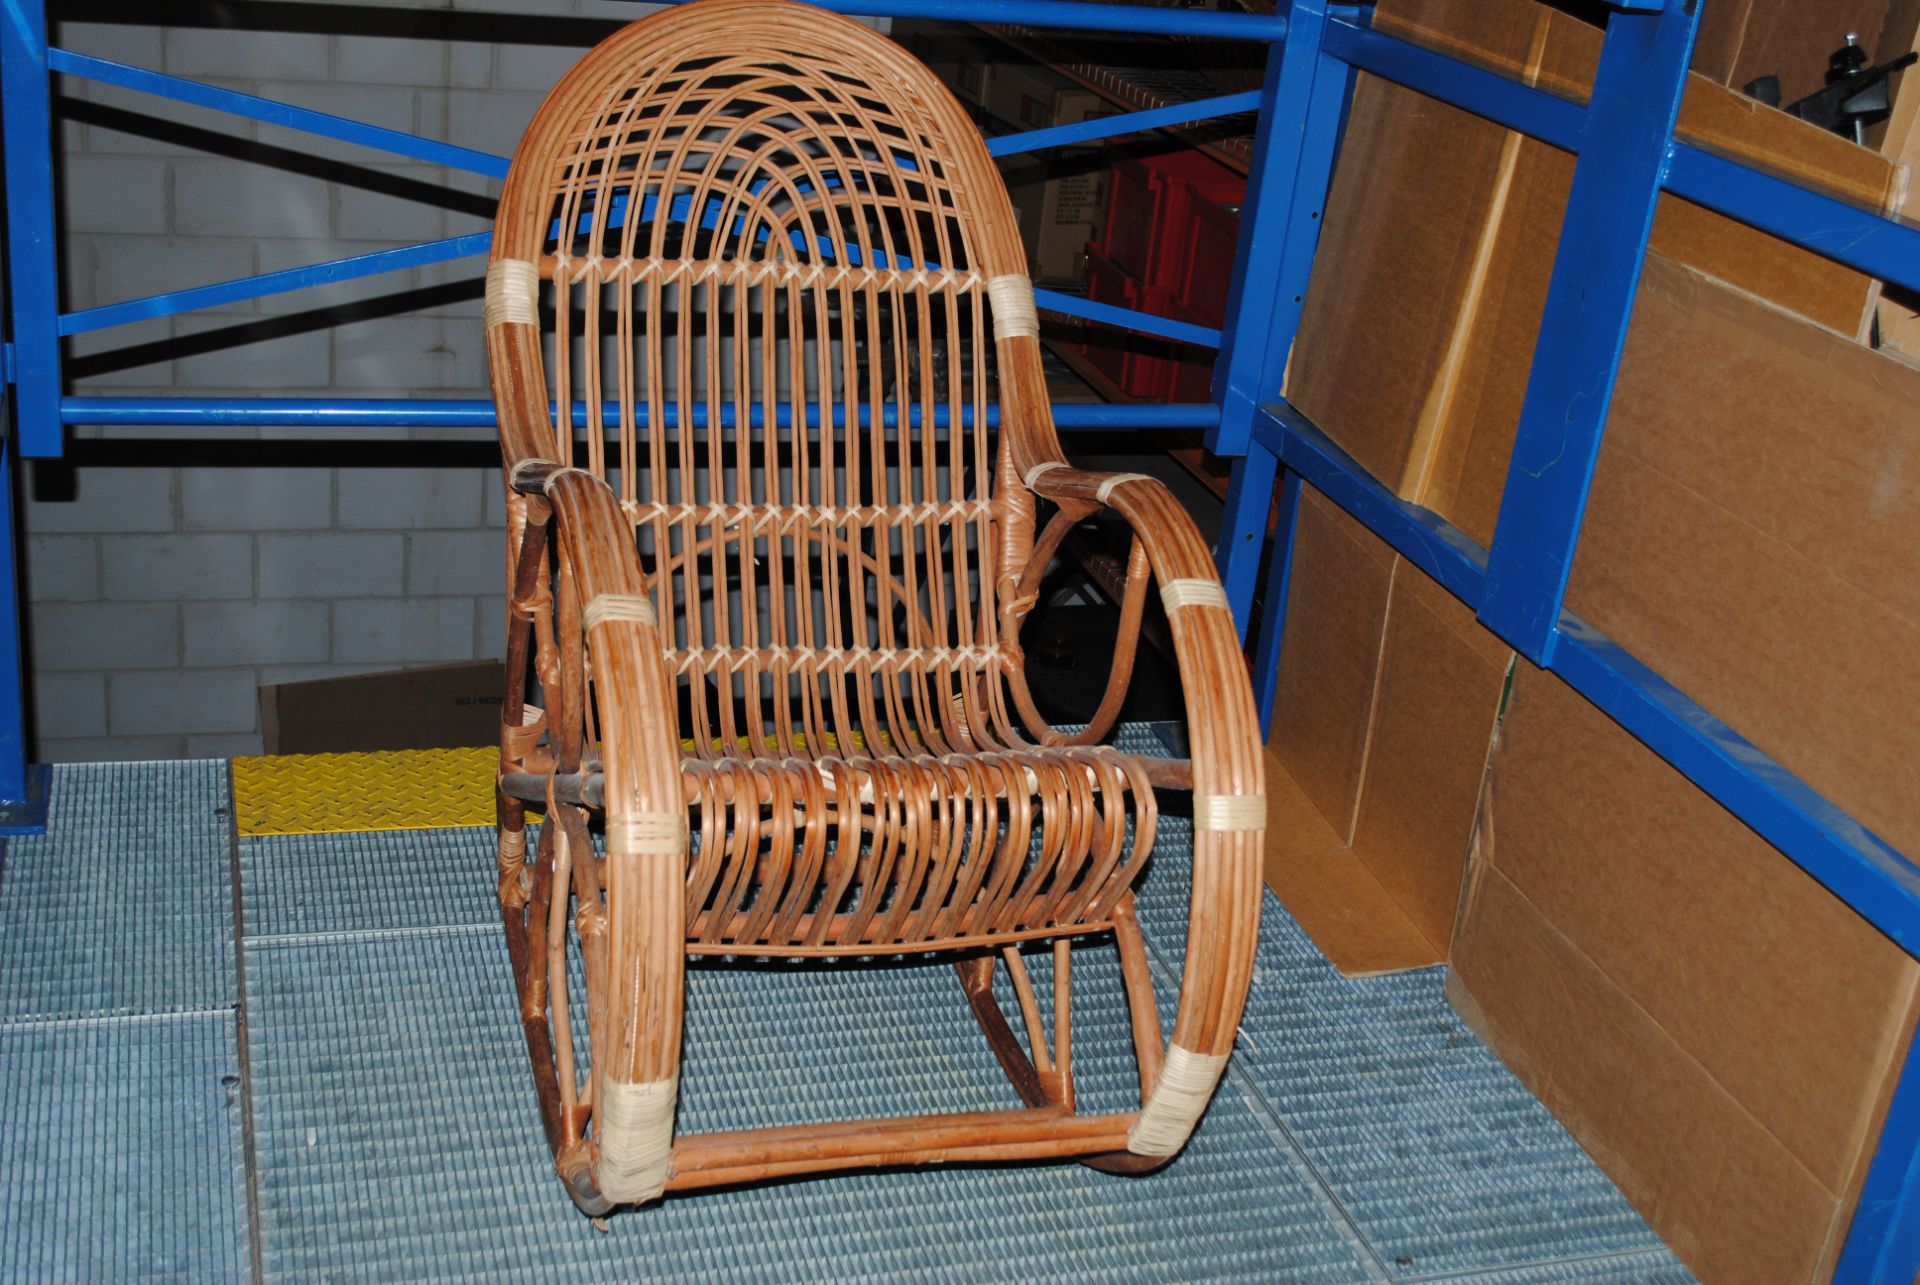 1 x Wicker Rocking Chair